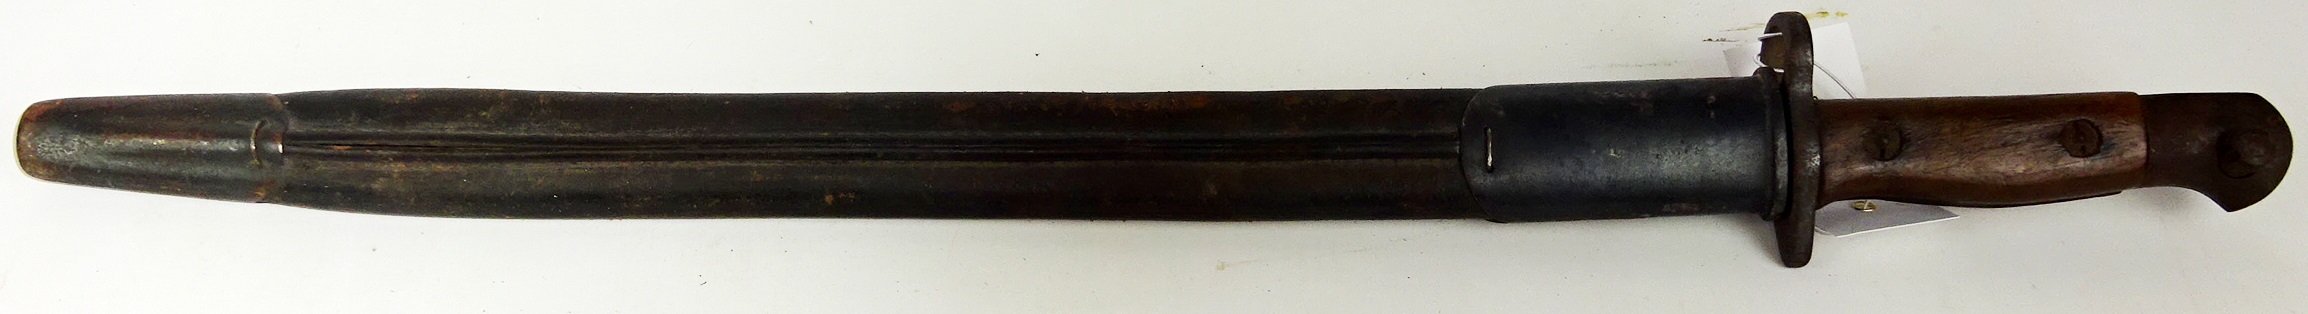 British Lee Metford Bayonet, two piece wood grips and steel mounts, stamped 11 16 6 KRL? 4689, - Image 2 of 2